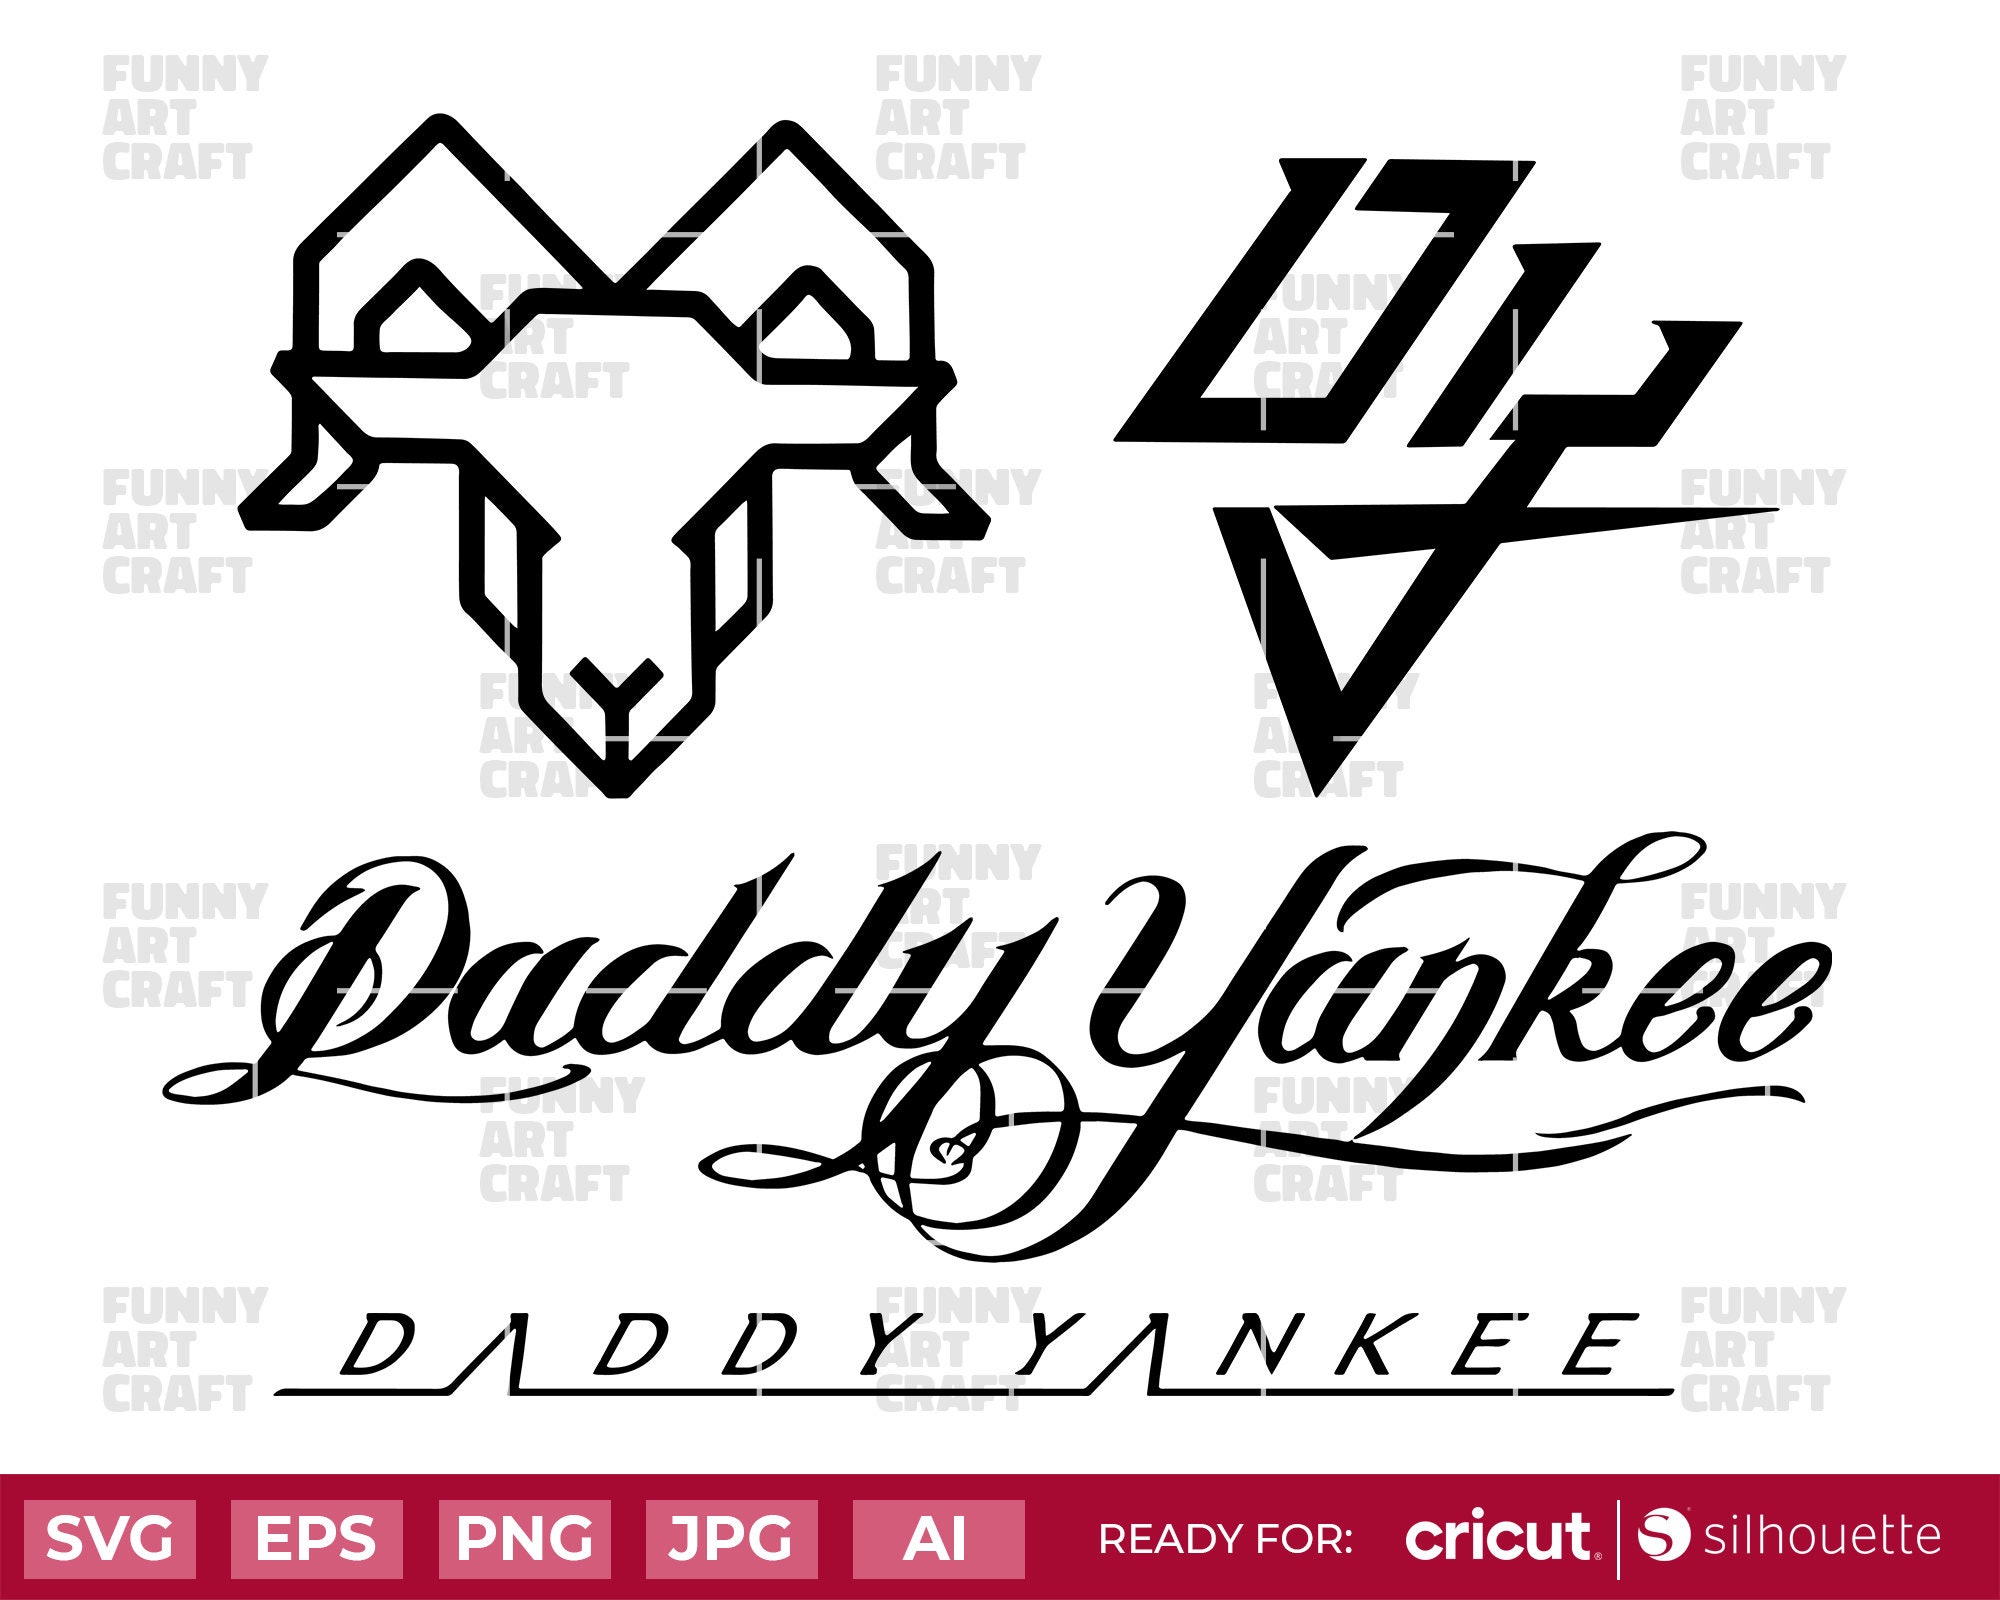 Vintage Daddy Yankee Legendaddy La Ultima Vuelta Tour Shirt